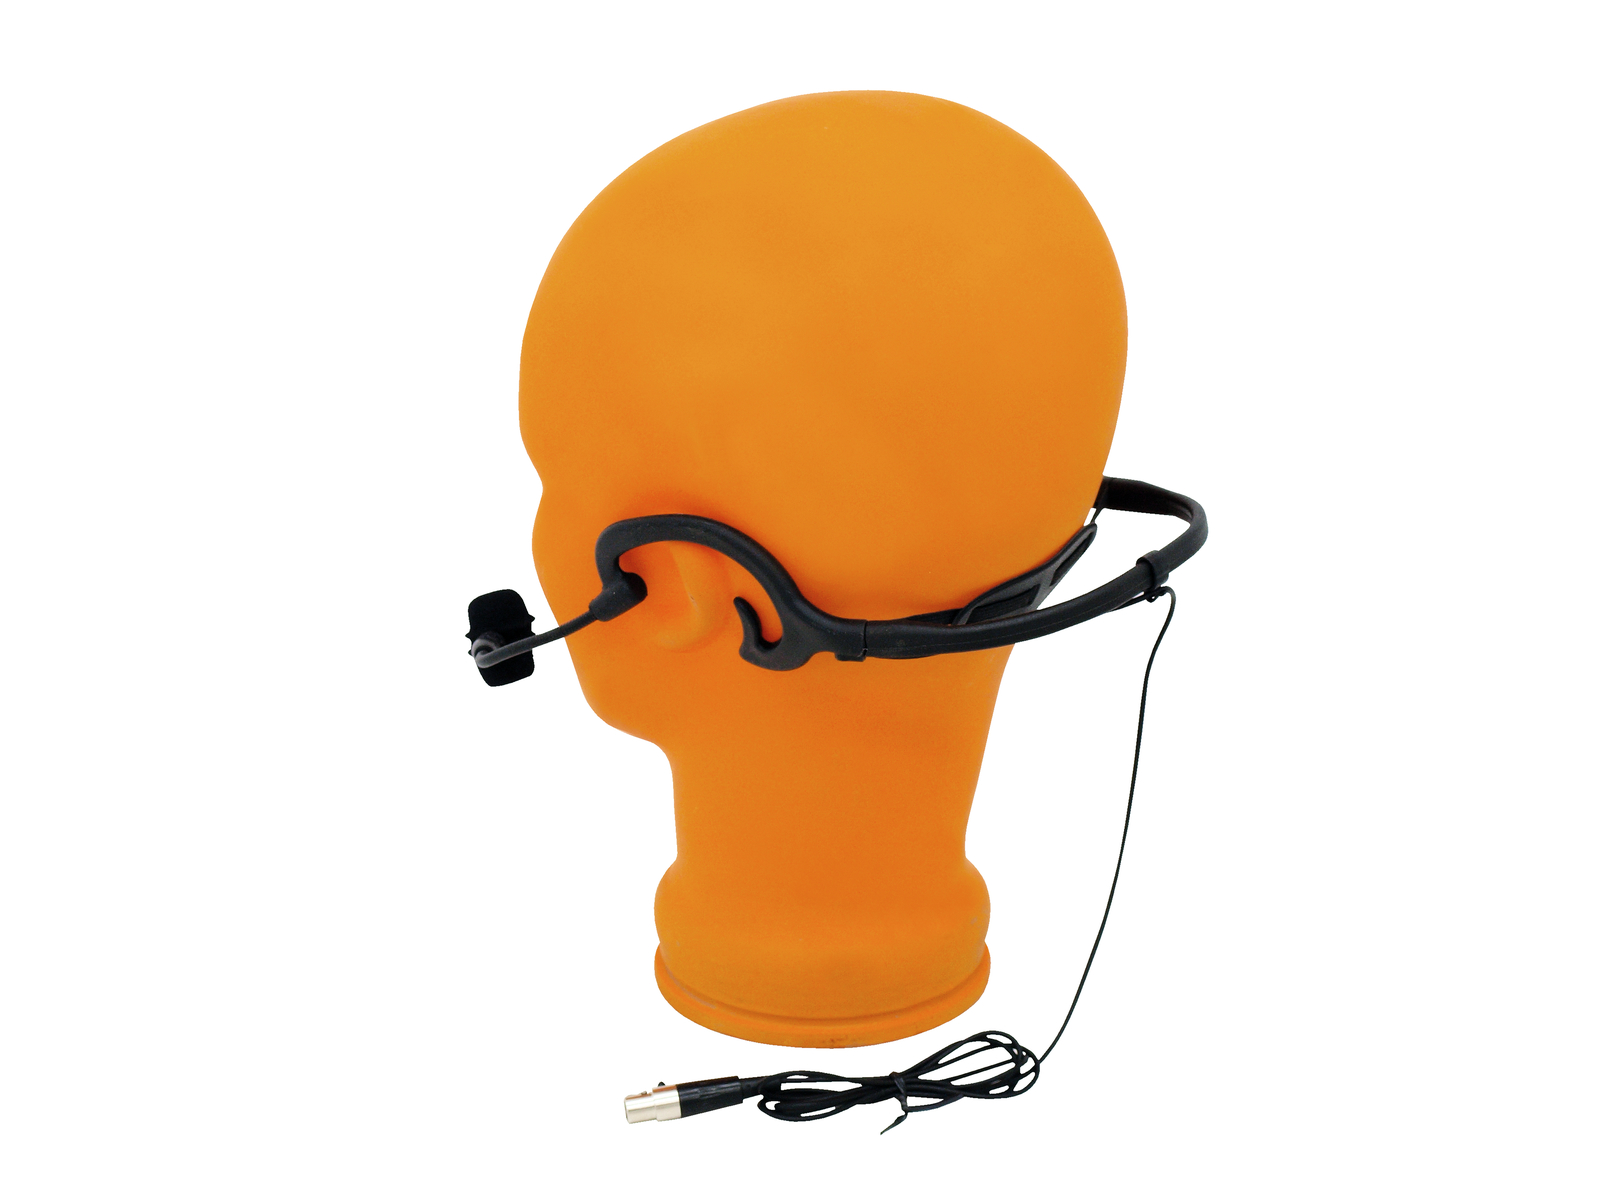 OMNITRONIC HS-1000 XLR Headset-Mikrofon